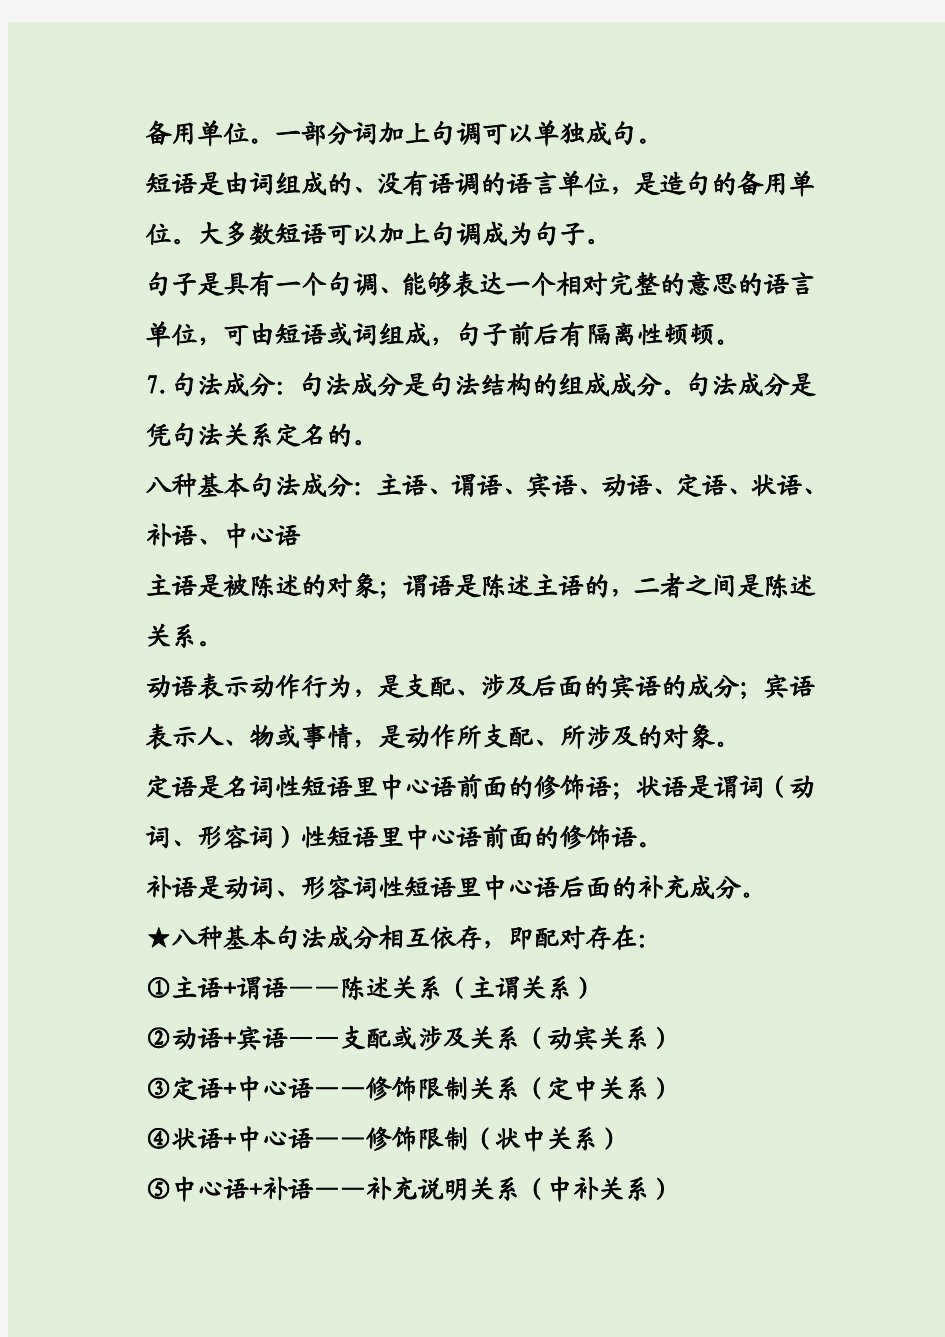 现代汉语下册复习资料整理完整版